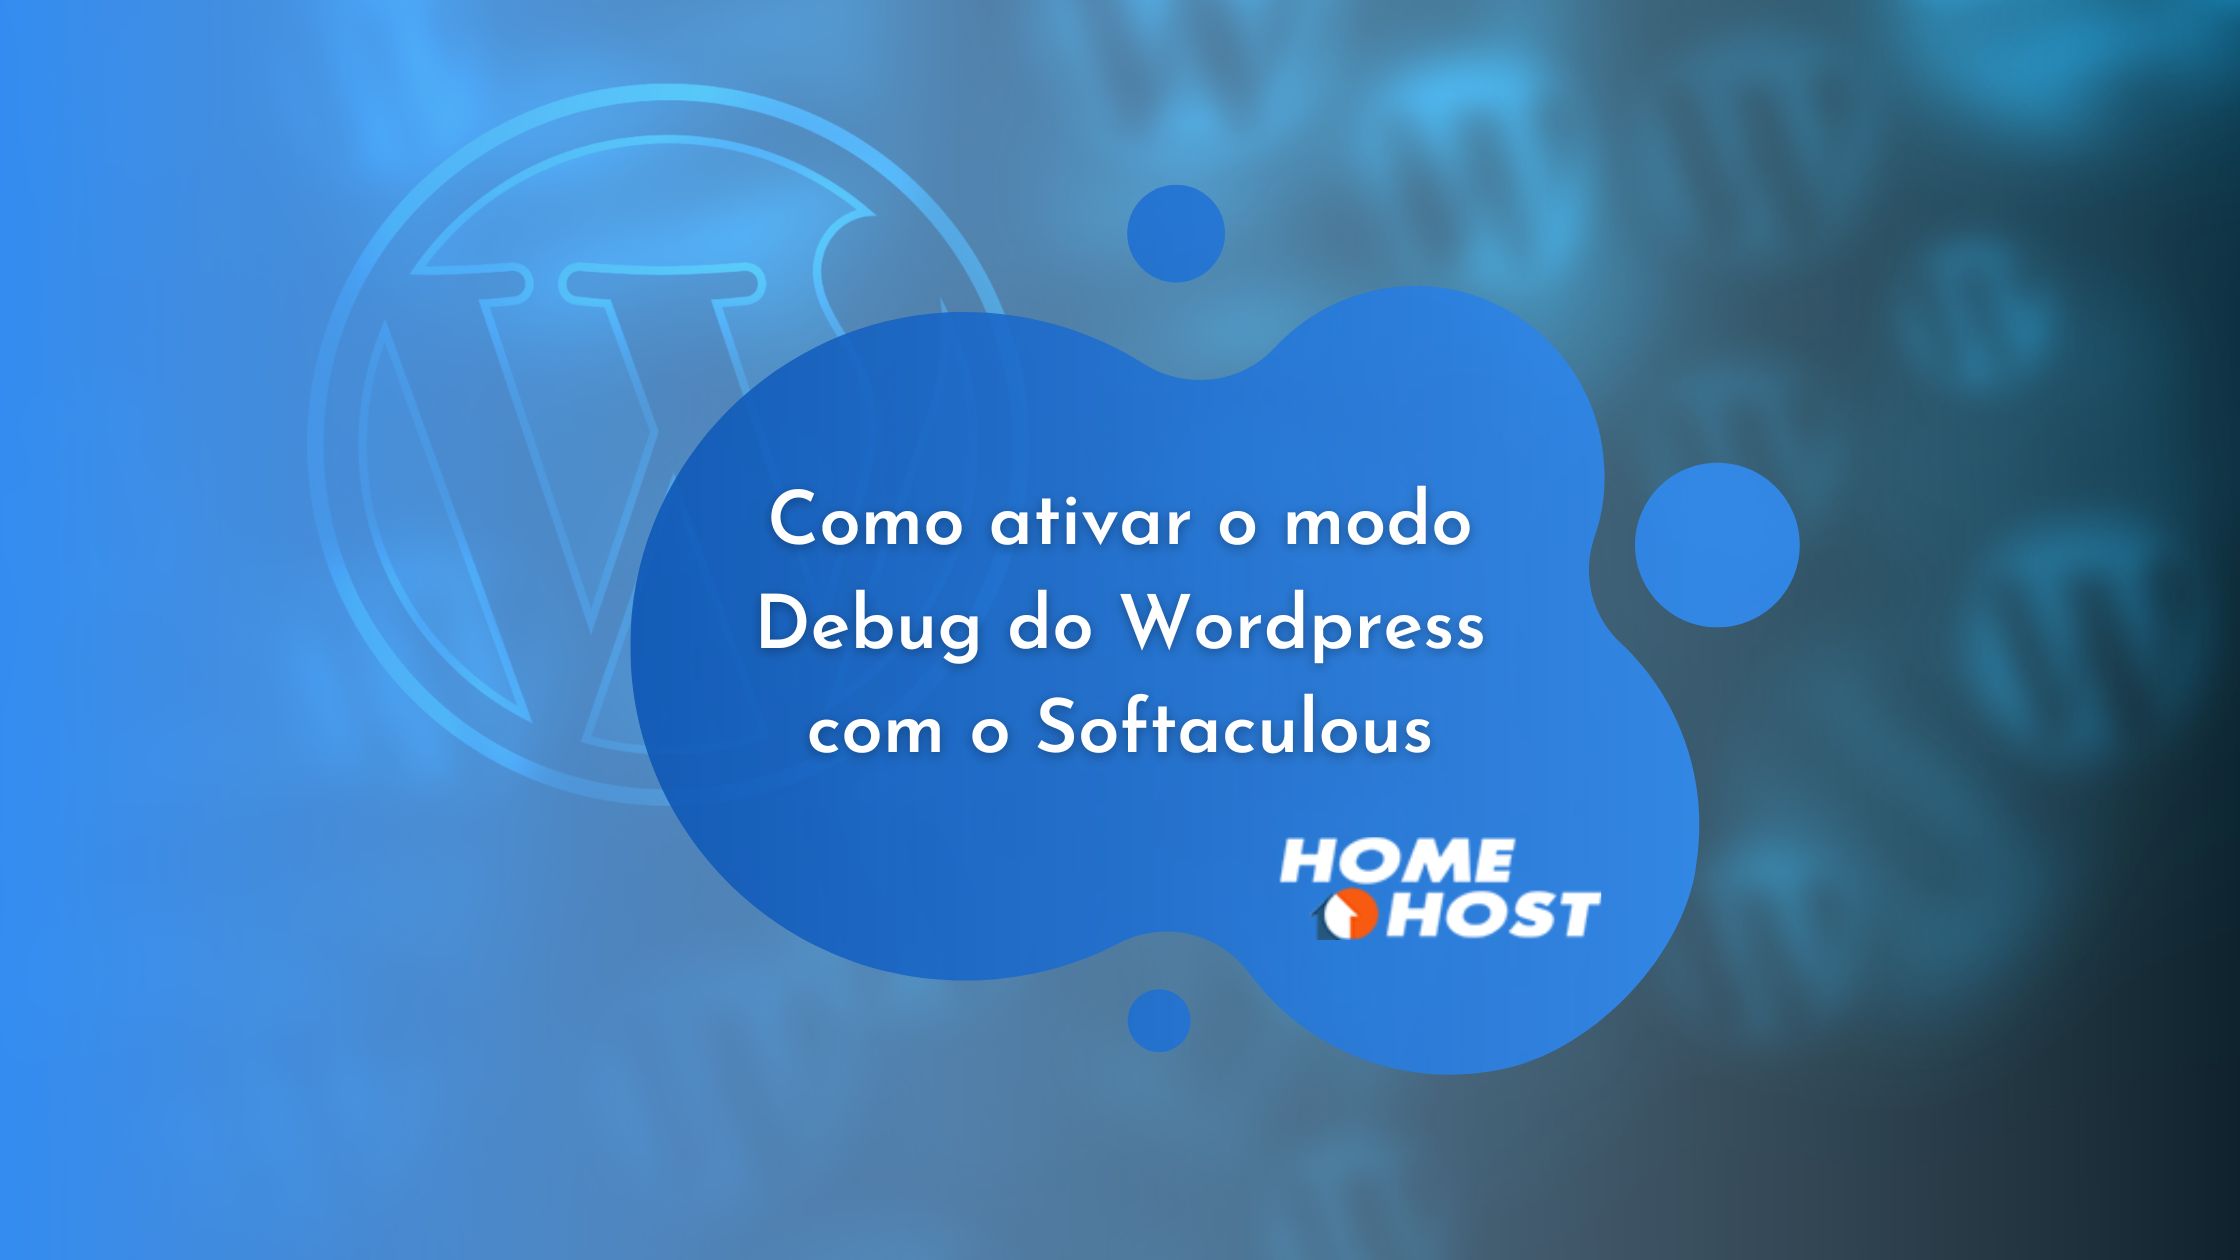 Como ativar o modo Debug do Wordpress com o Softaculous - Tutorial homehost.com.br